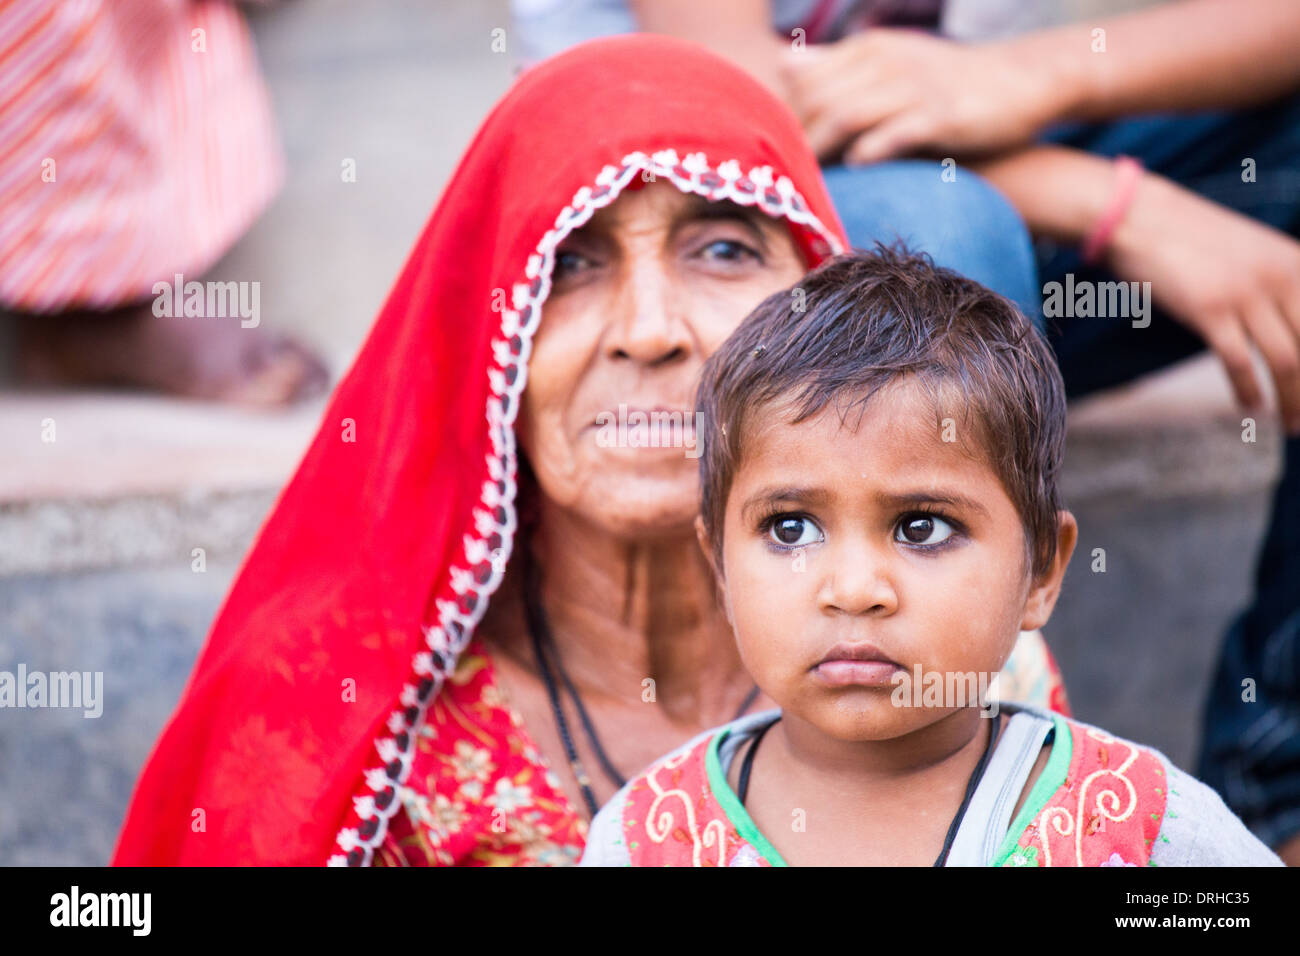 Vieille Femme et enfant en Bagar, Rajasthan, Inde Banque D'Images